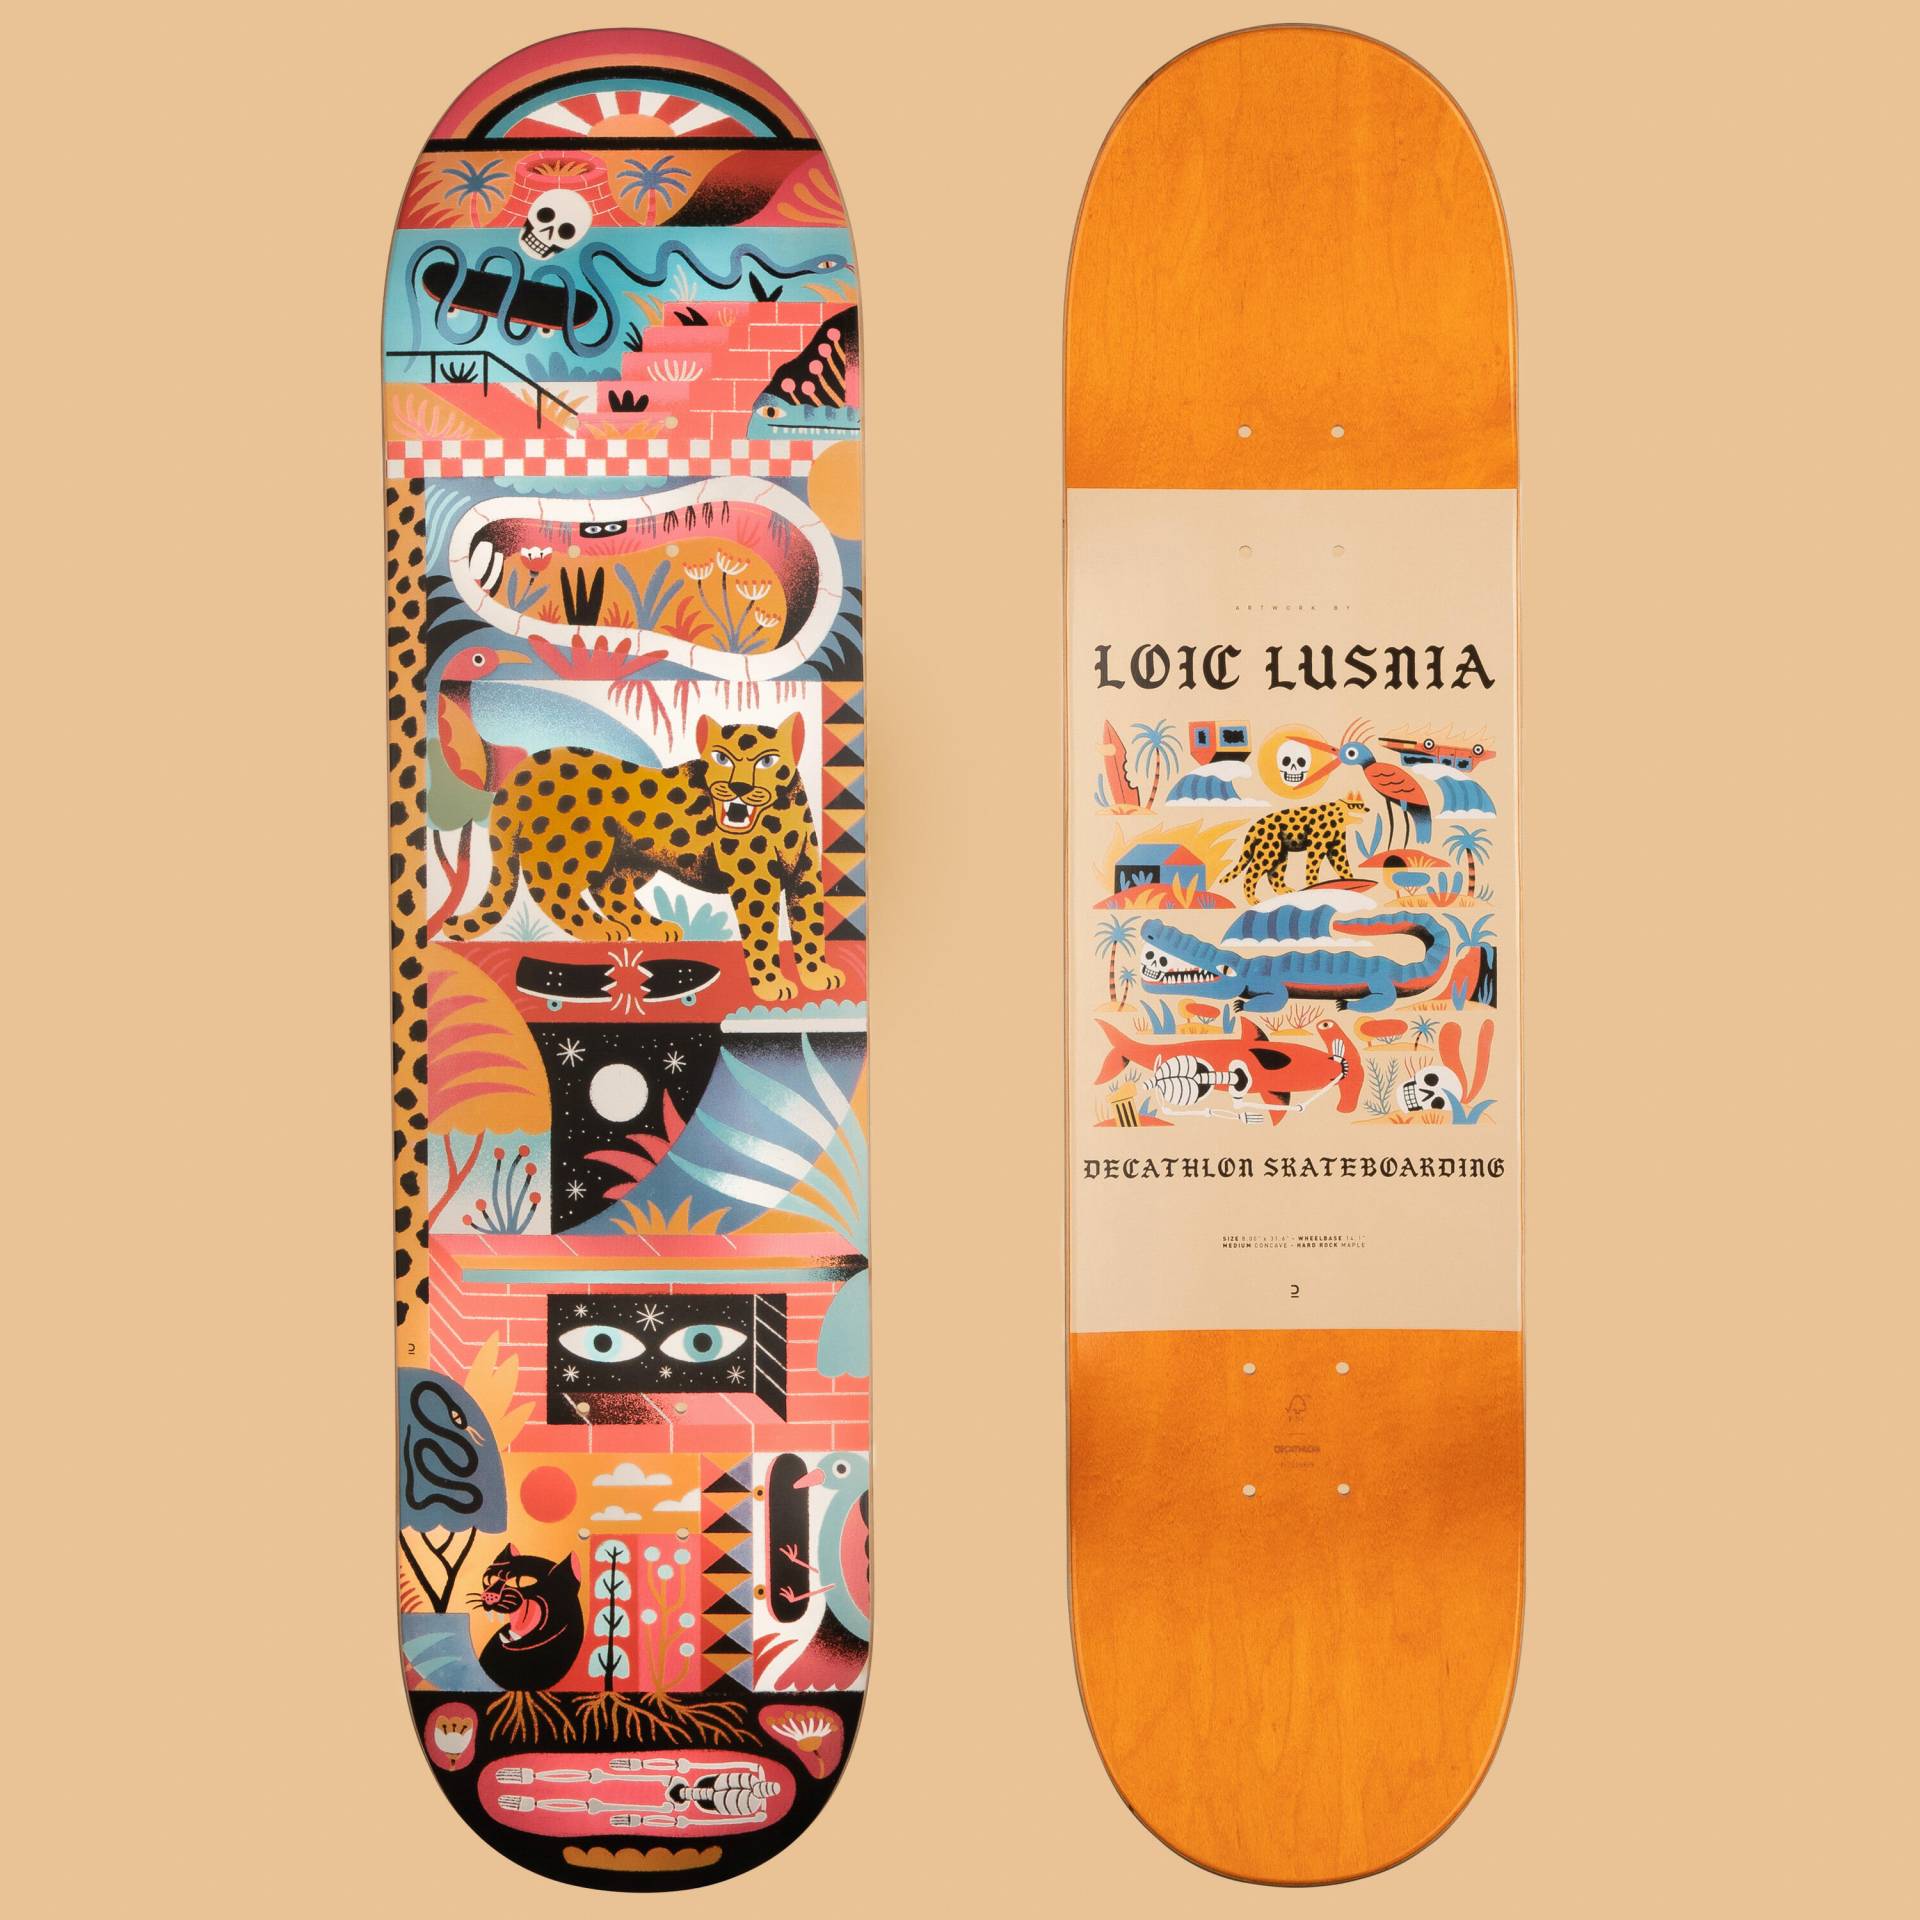 Skateboard-Deck 8" - DK500 Ahorn Popsicle Grafik von Loic Lusnia von Decathlon